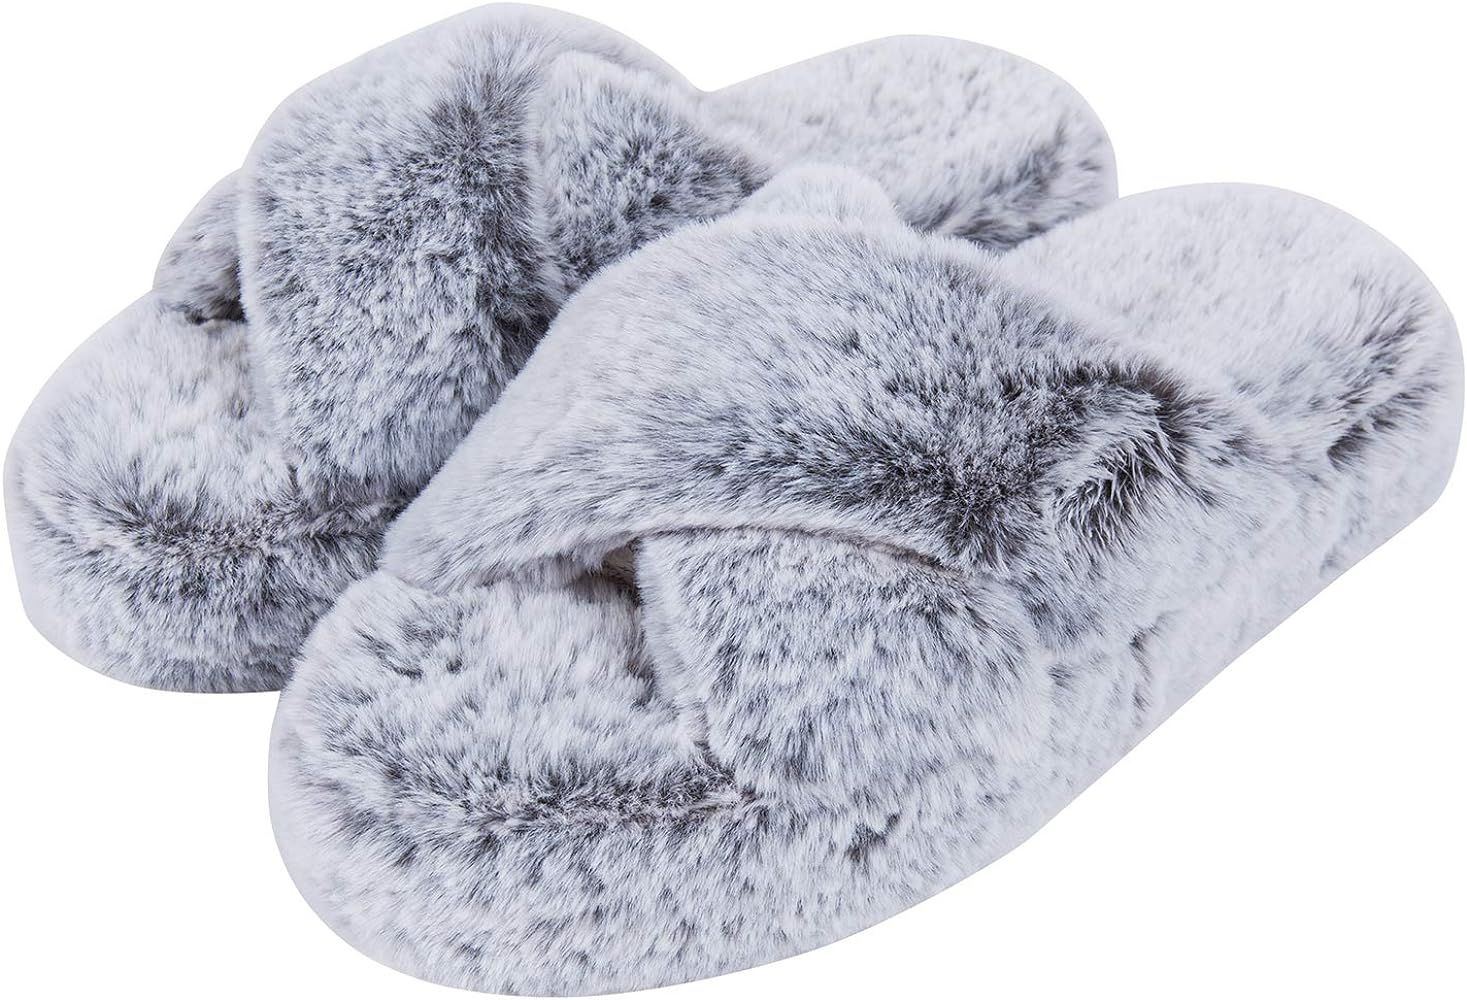 DL Fluffy Womens House Slippers Cross Band Open Toe, Soft Plush Fleece Bedroom Slippers Women Mem... | Amazon (US)